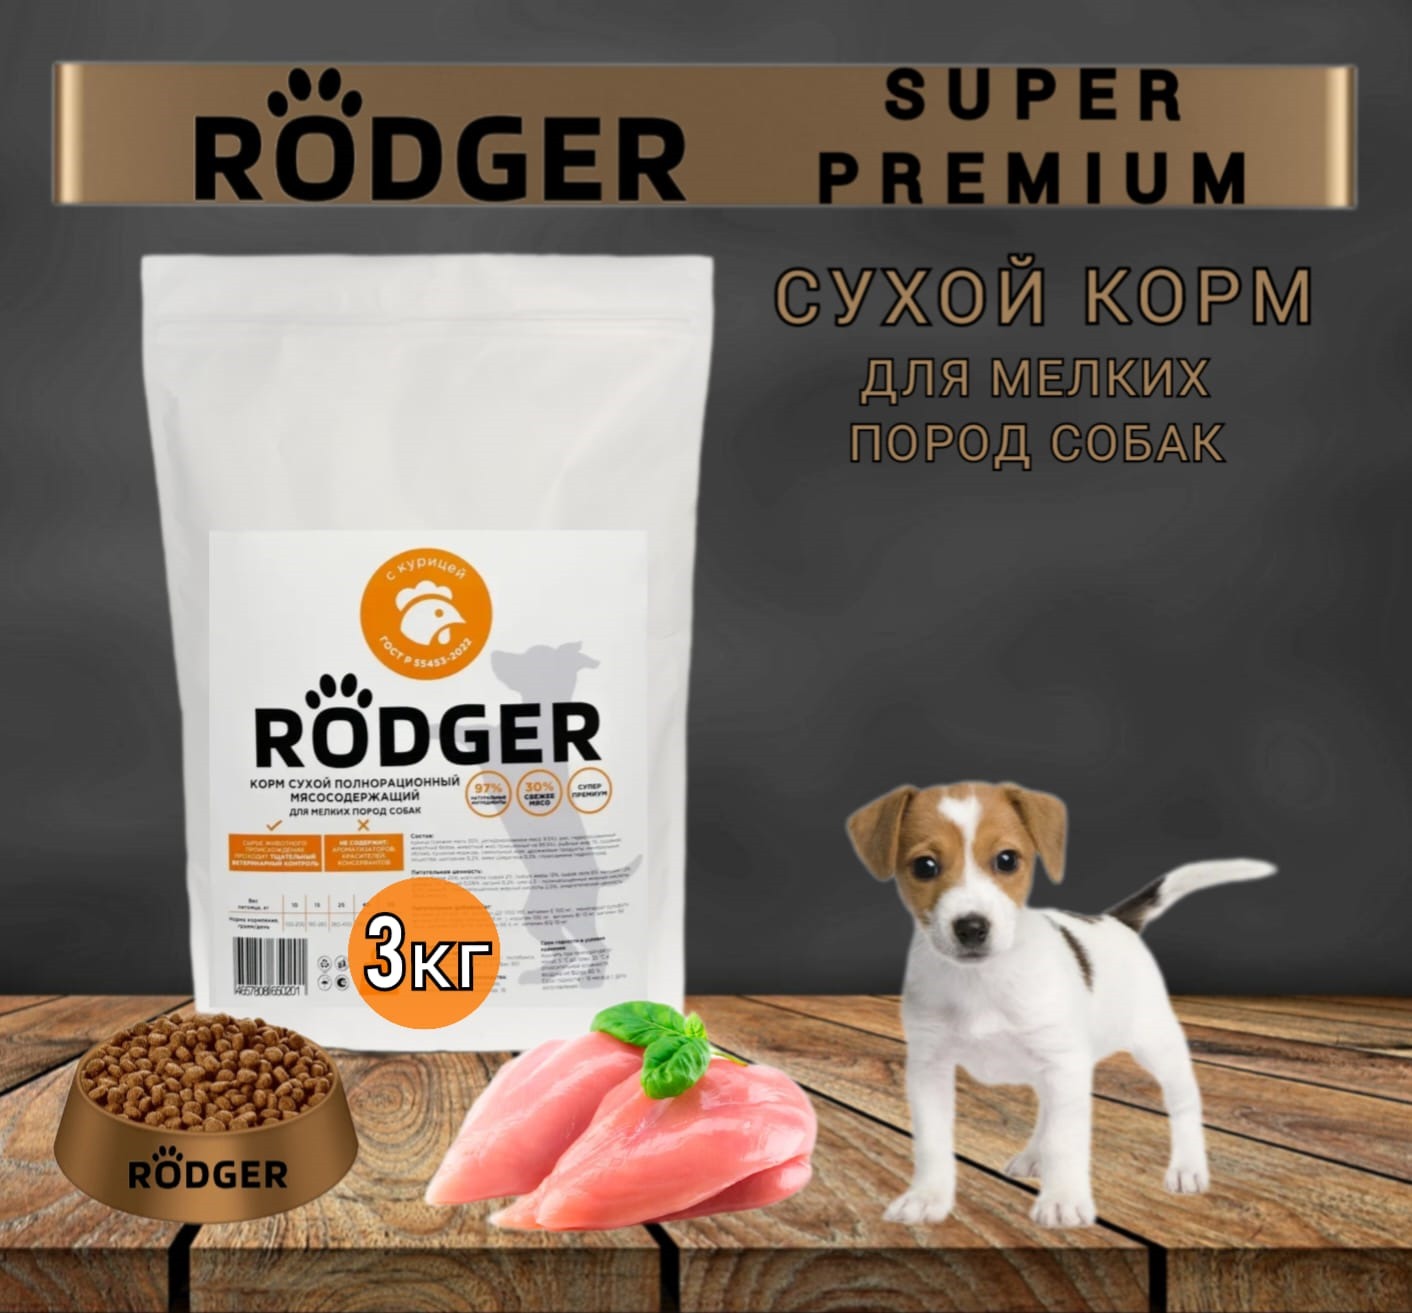 Сухой корм для собак RODGER Super Premium, для мелких пород, курица, 3 кг